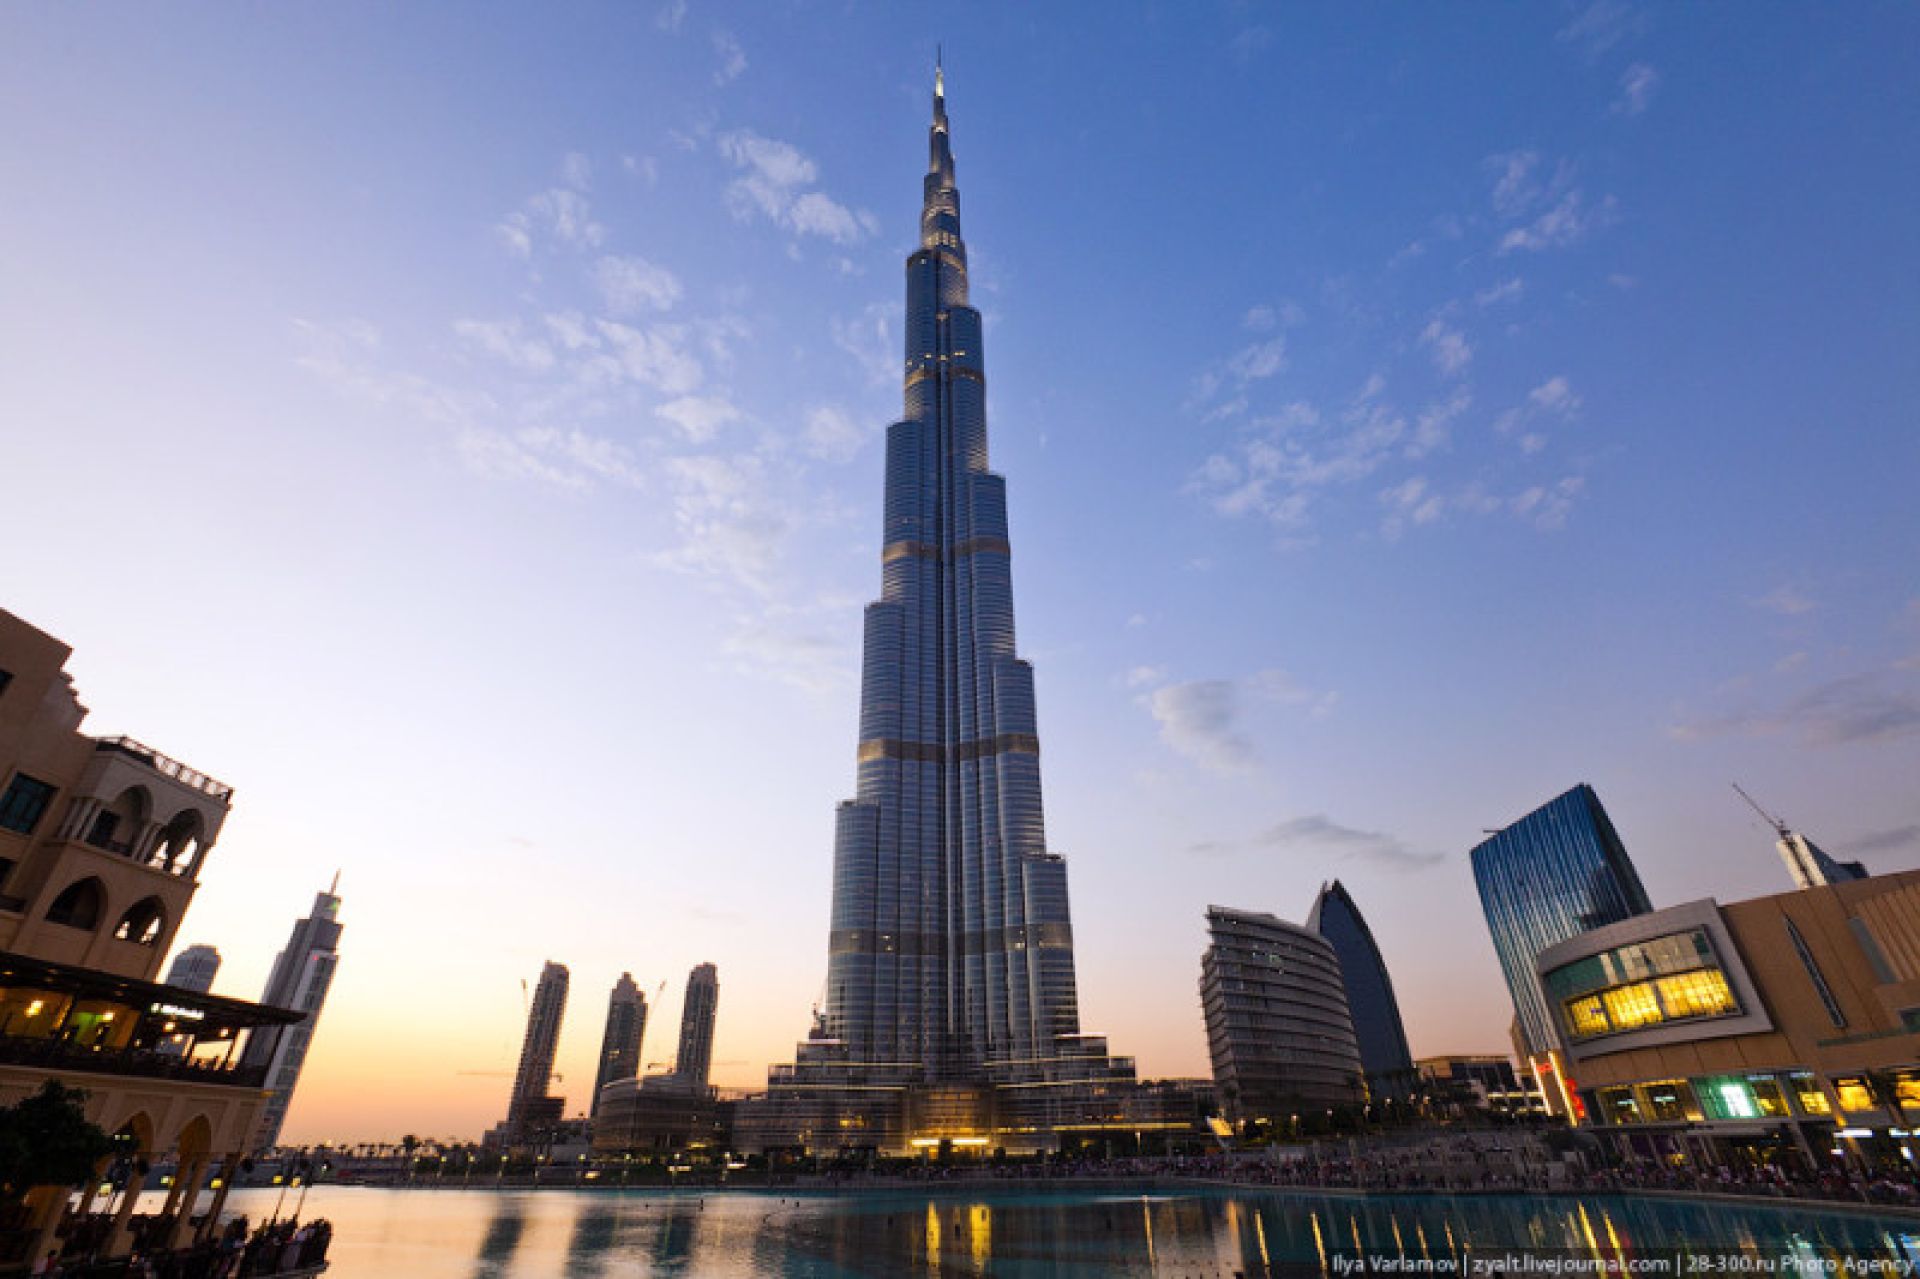 Укажите самое высокое. Башня Бурдж Халифа. Башня в Дубаи Бурж Халиф. Башня в Дубае Бурдж Халифа высота. Самое высокое здание Бурдж Халифа.